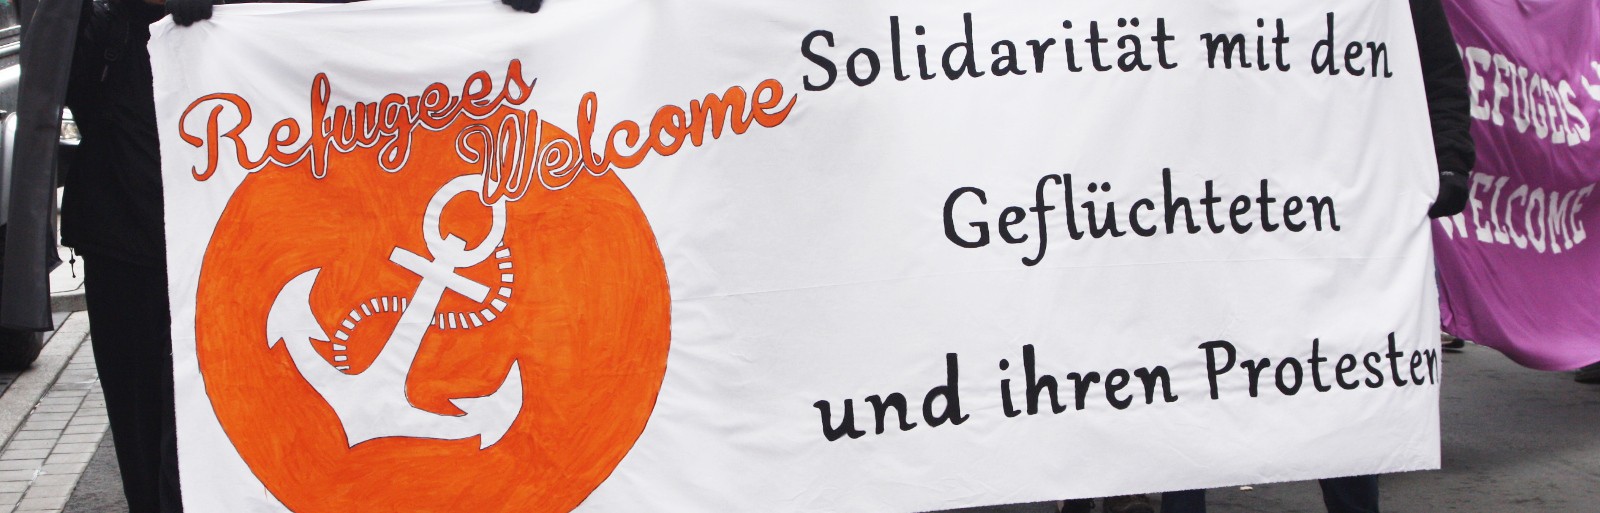 Refugees Welcome Dortmund